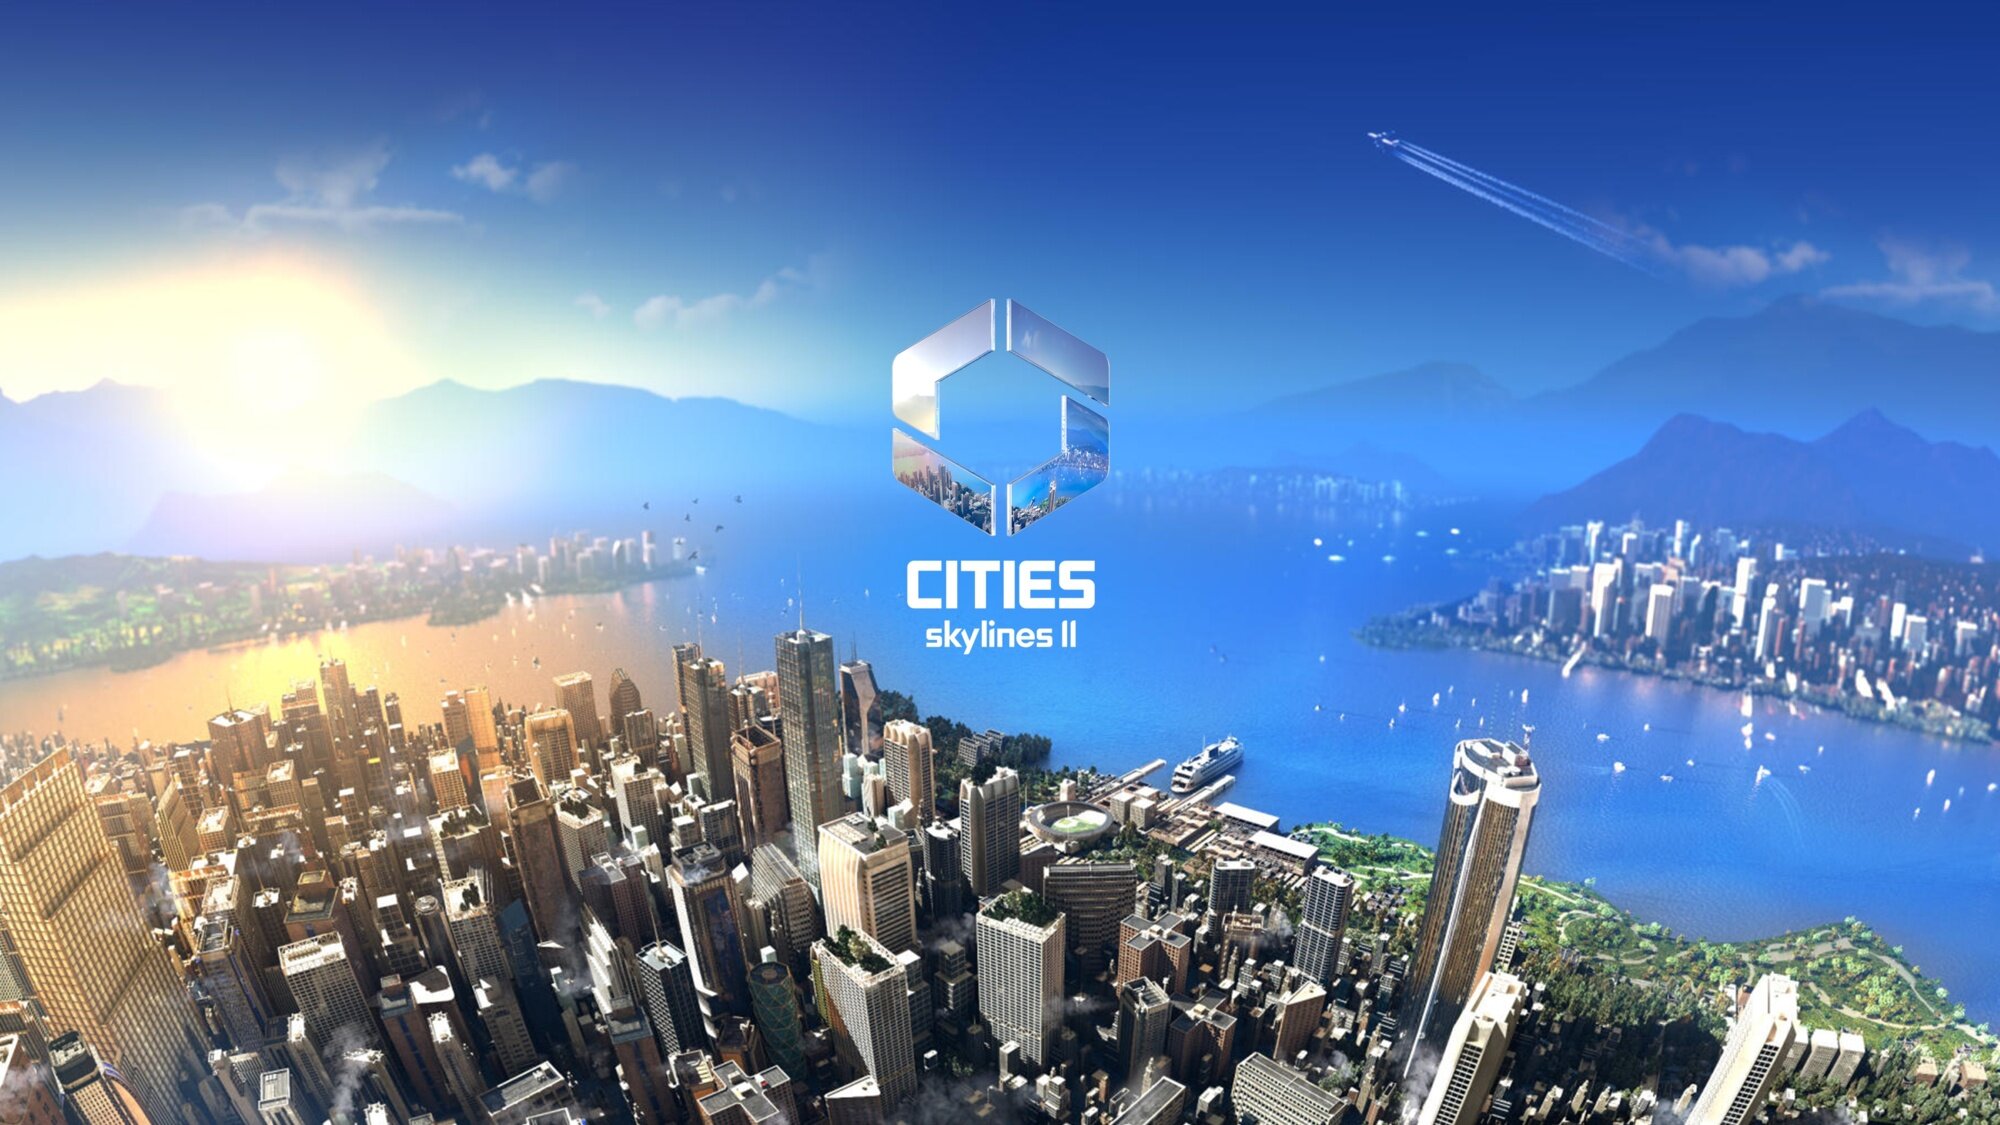 Paráda! Paradox oznamuje Cities Skylines 2 a partnerství s Game Pass